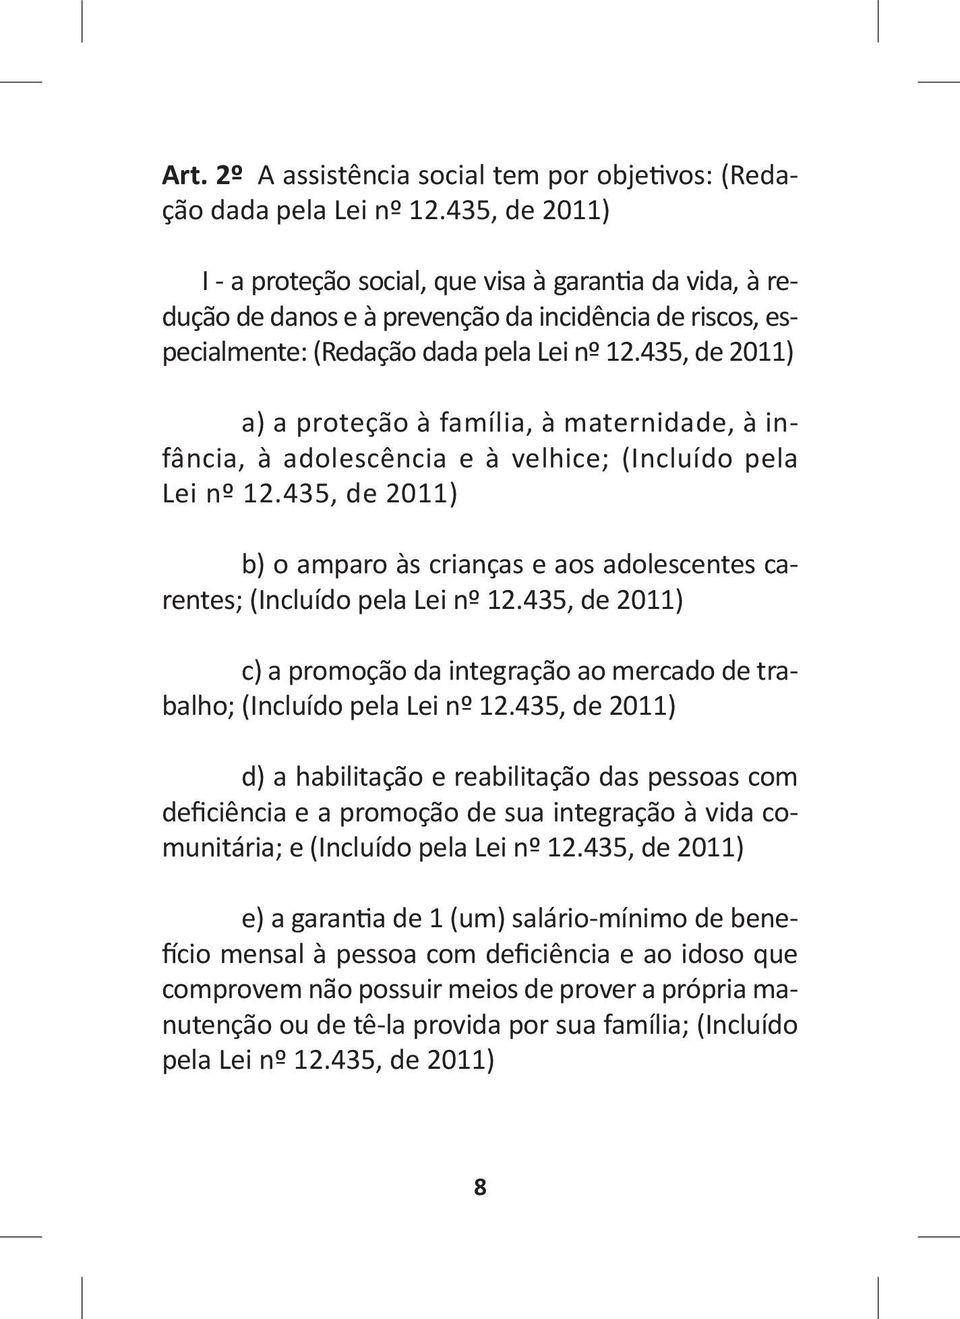 435, de 2011) a) a proteção à família, à maternidade, à infância, à adolescência e à velhice; (Incluído pela Lei nº 12.